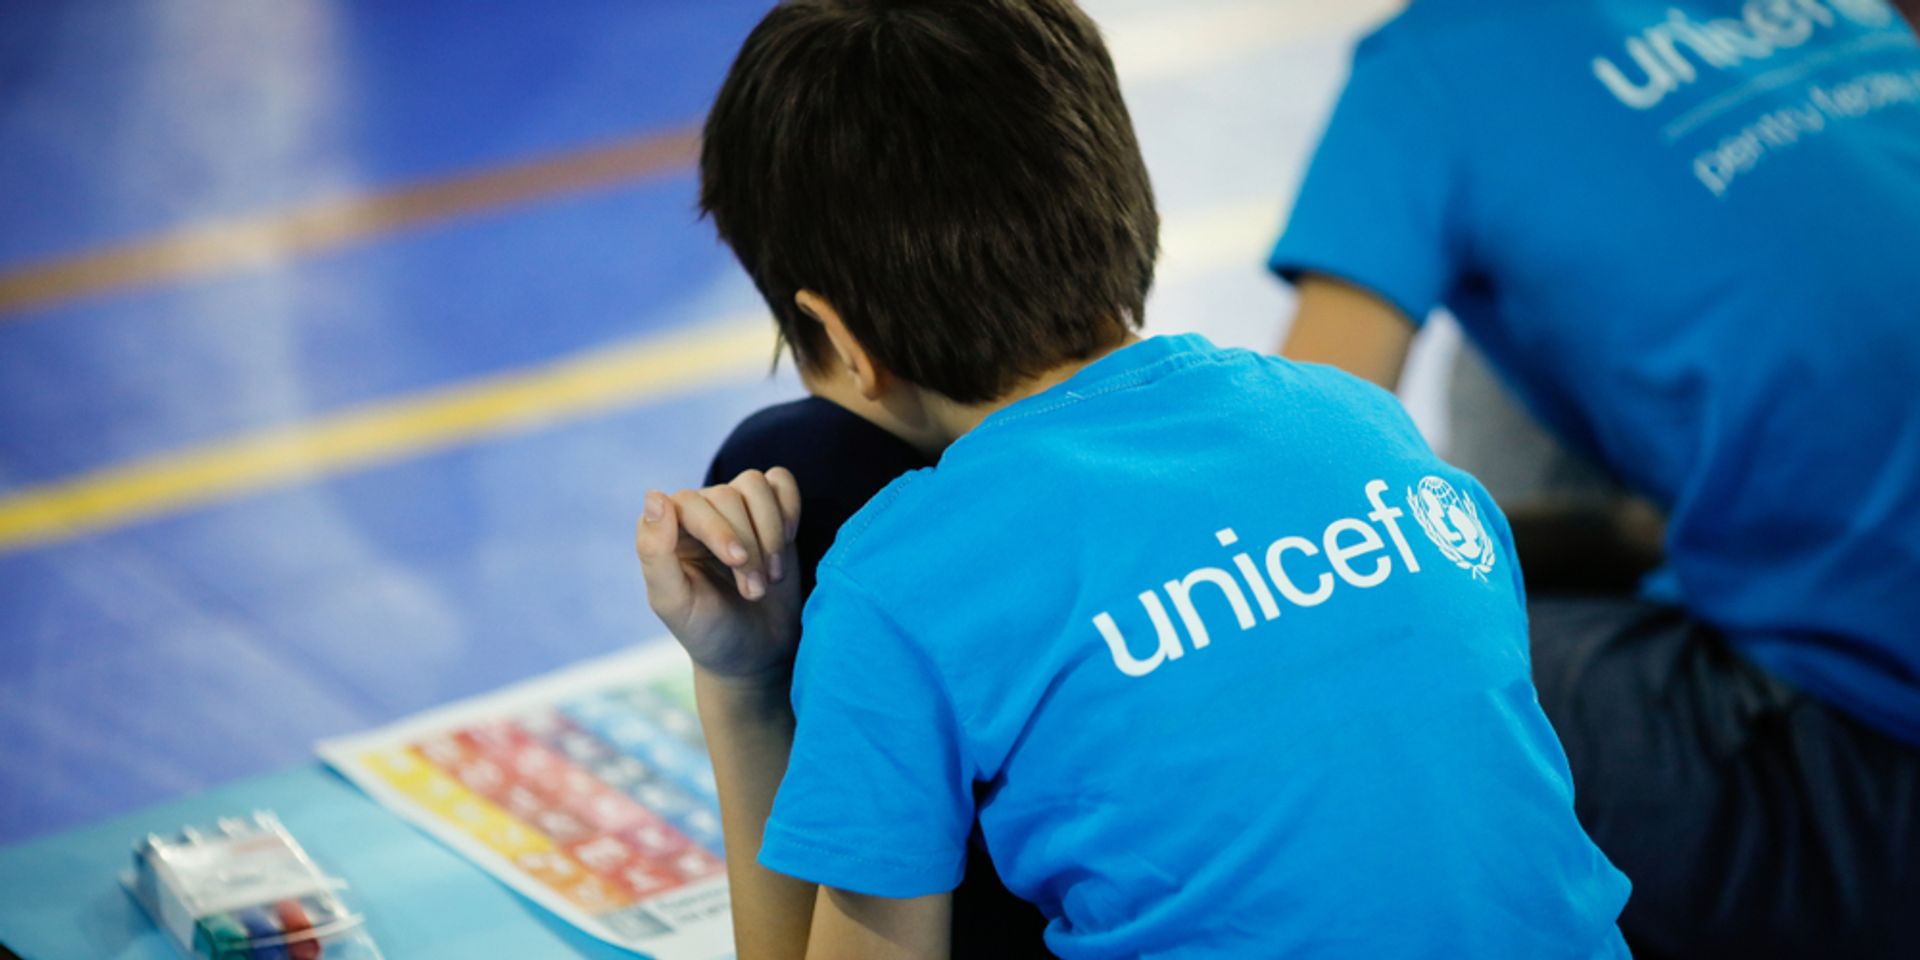 Soha ennyi gyereknek nem segített még az UNICEF